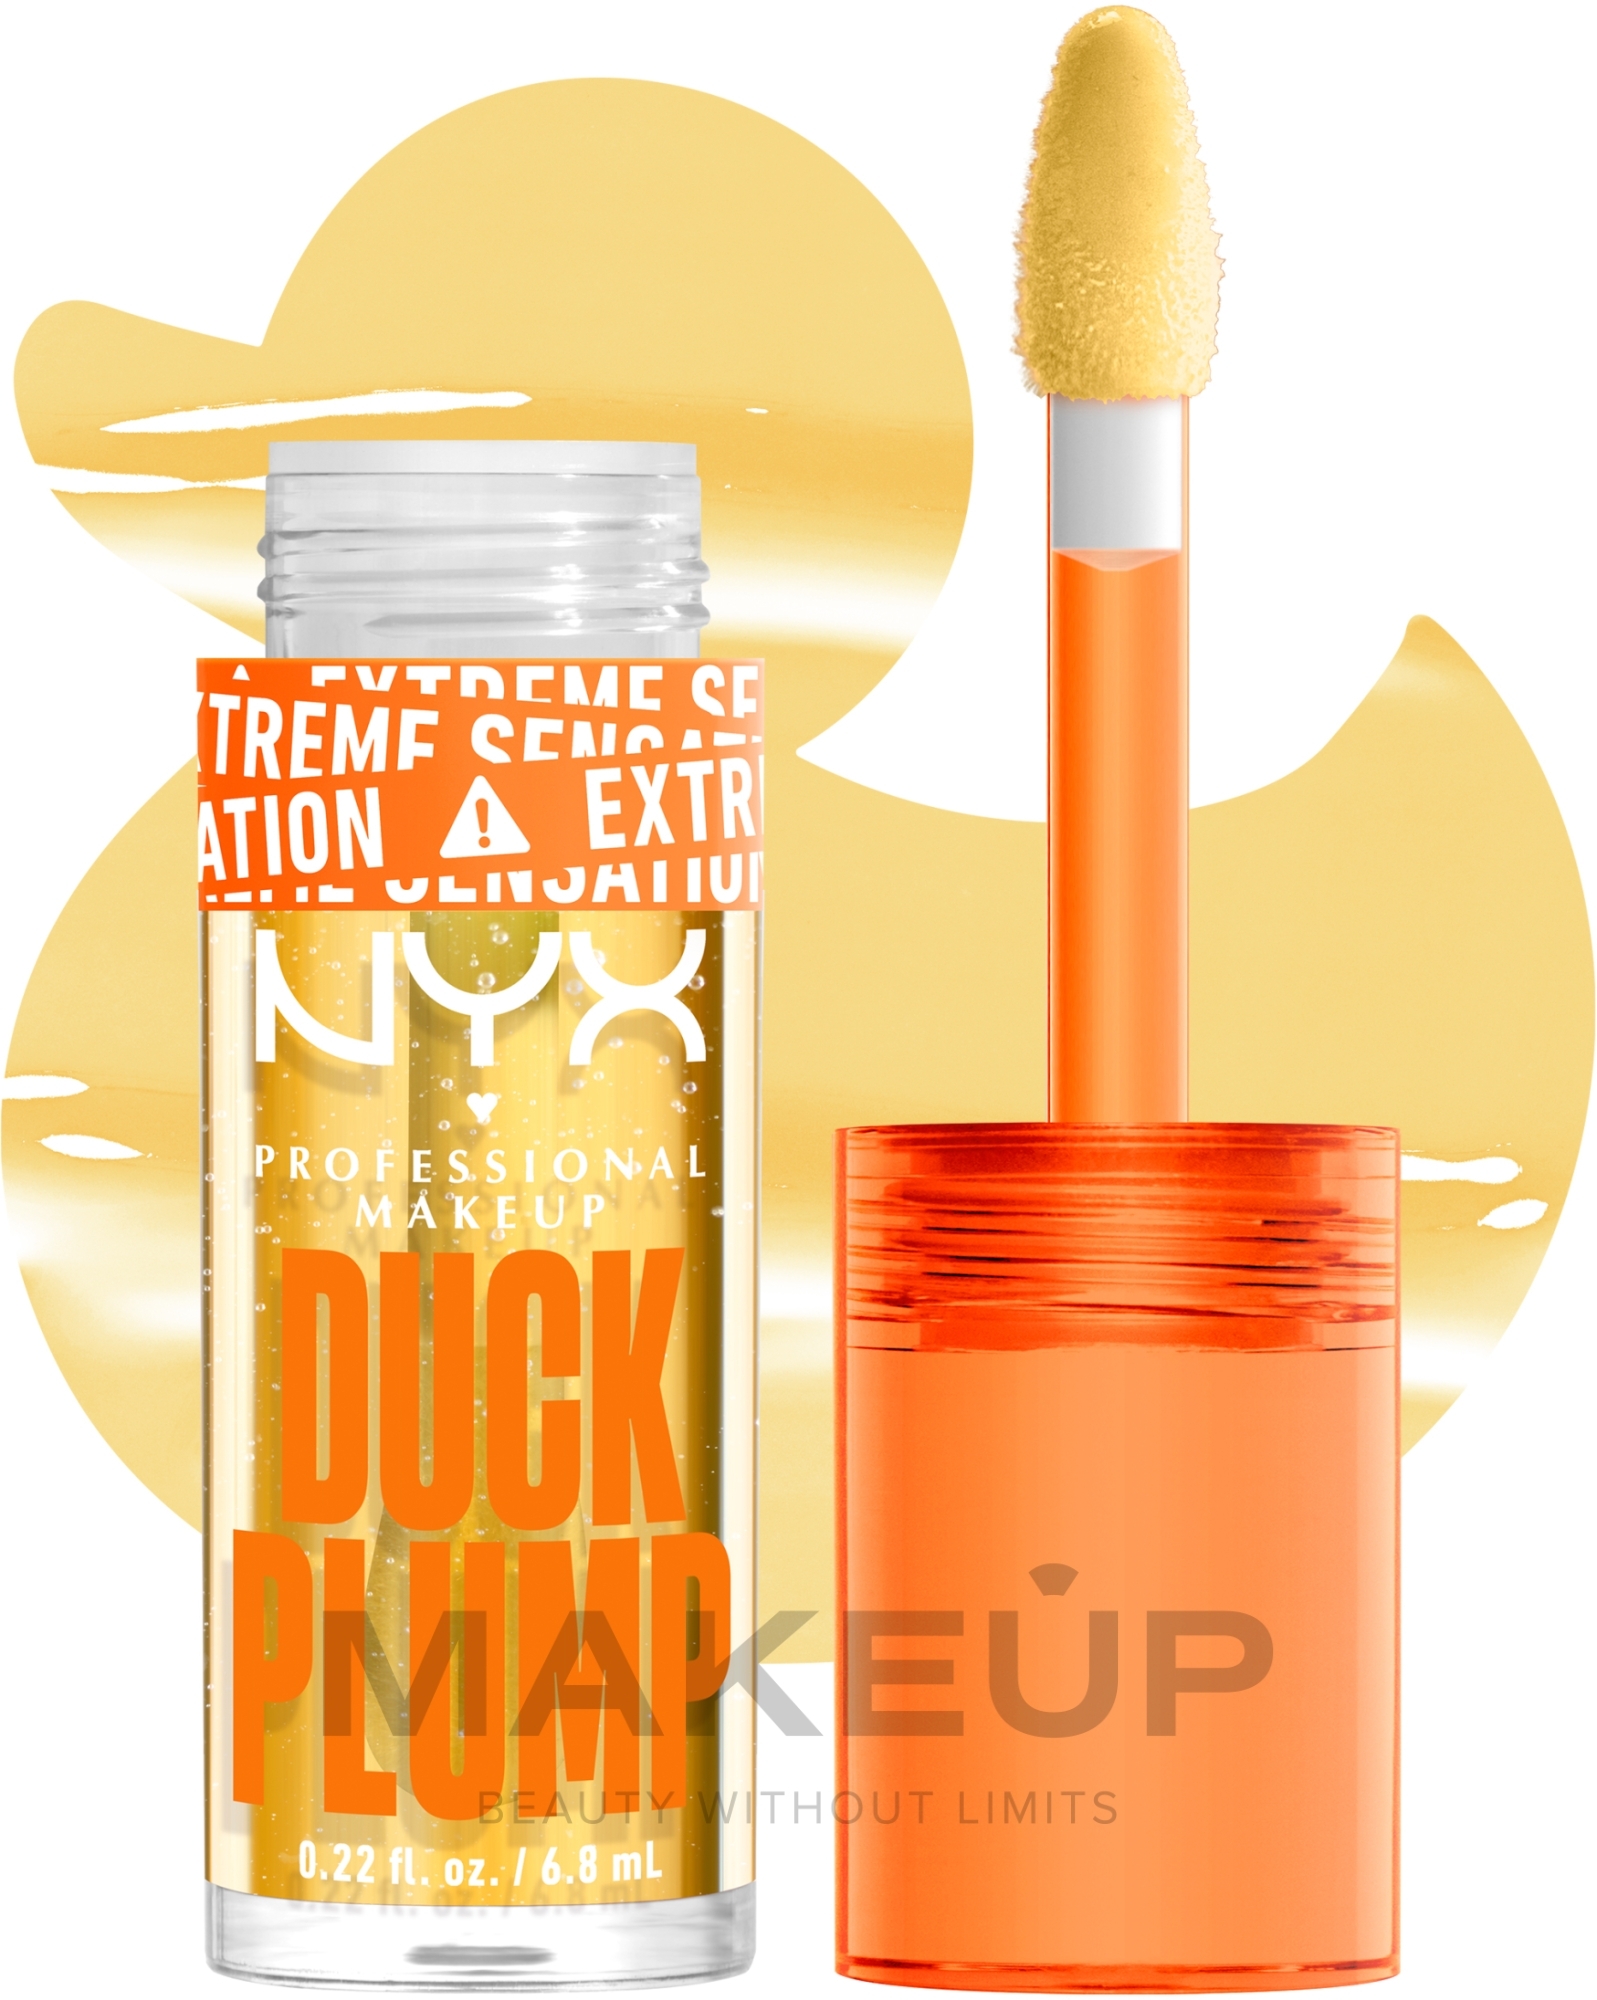 ПОДАРОК! Высокопигментированный блеск-плампер - NYX Professional Makeup Duck Plump (мини) — фото 01 - Clearly Spicy